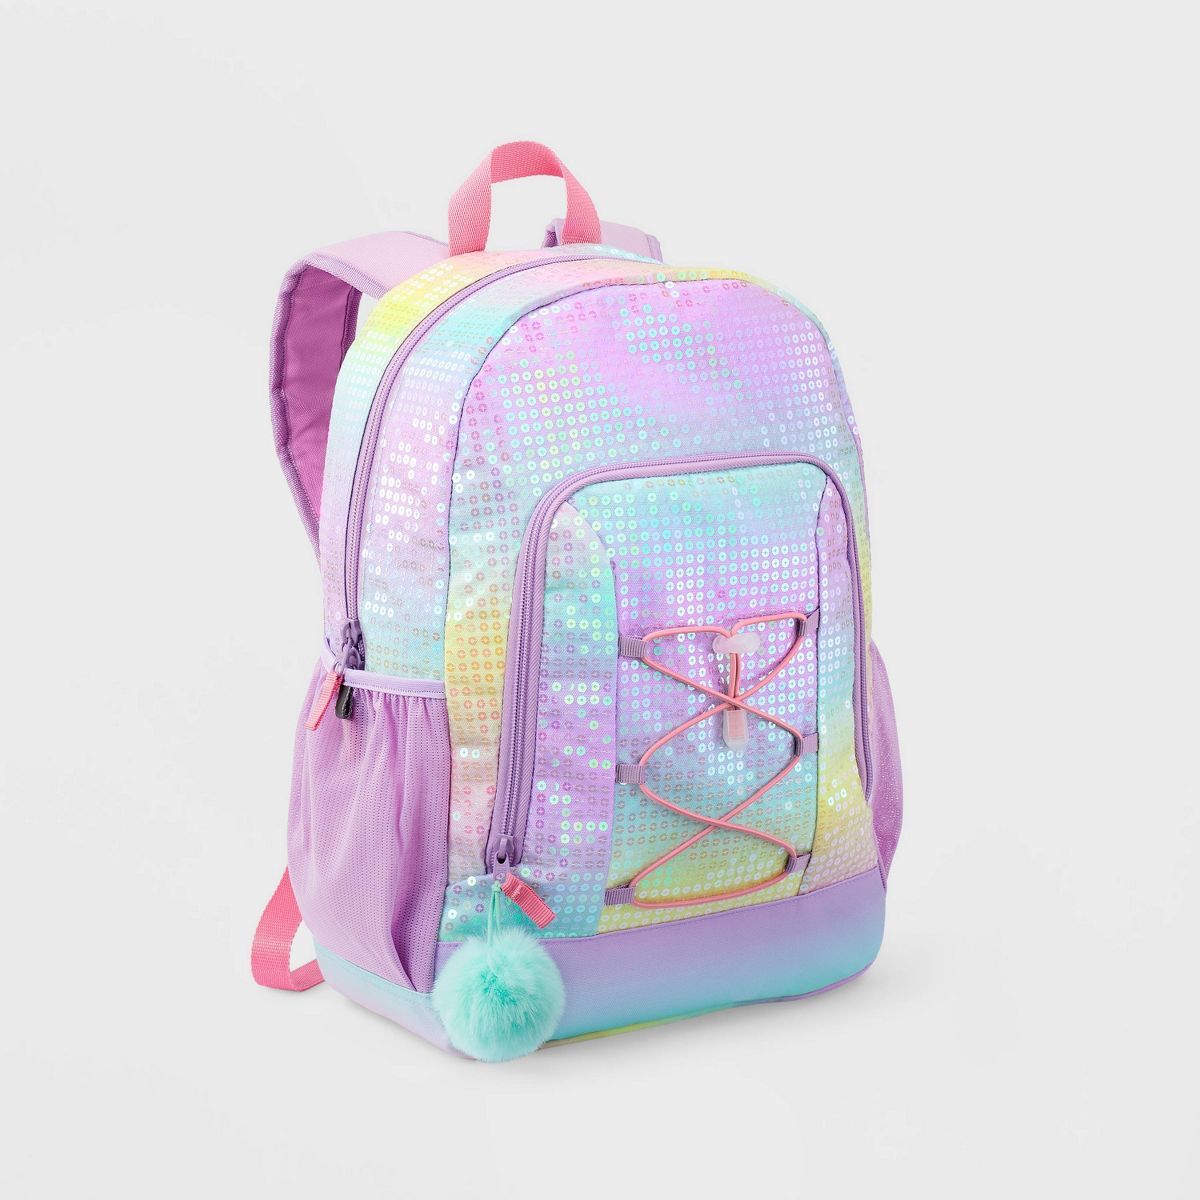 Kids' 16.5" Backpack Sequin - Cat & Jack™ | Target